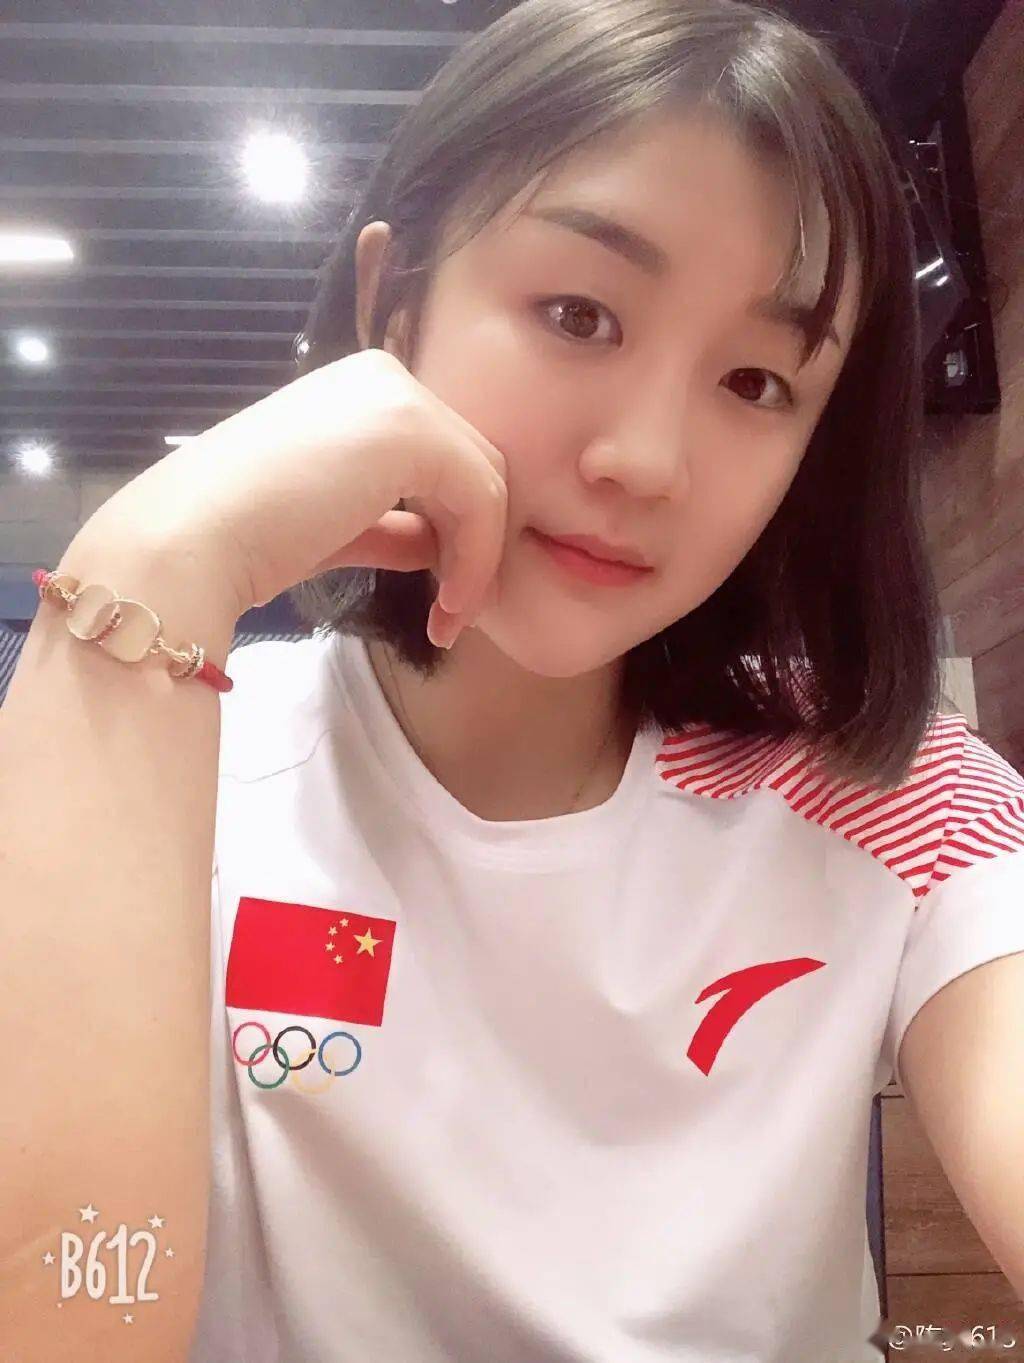 开启 梦 时代 陈梦勇夺东京奥运乒乓球女单金牌,赛后约表哥黄晓明青岛相聚